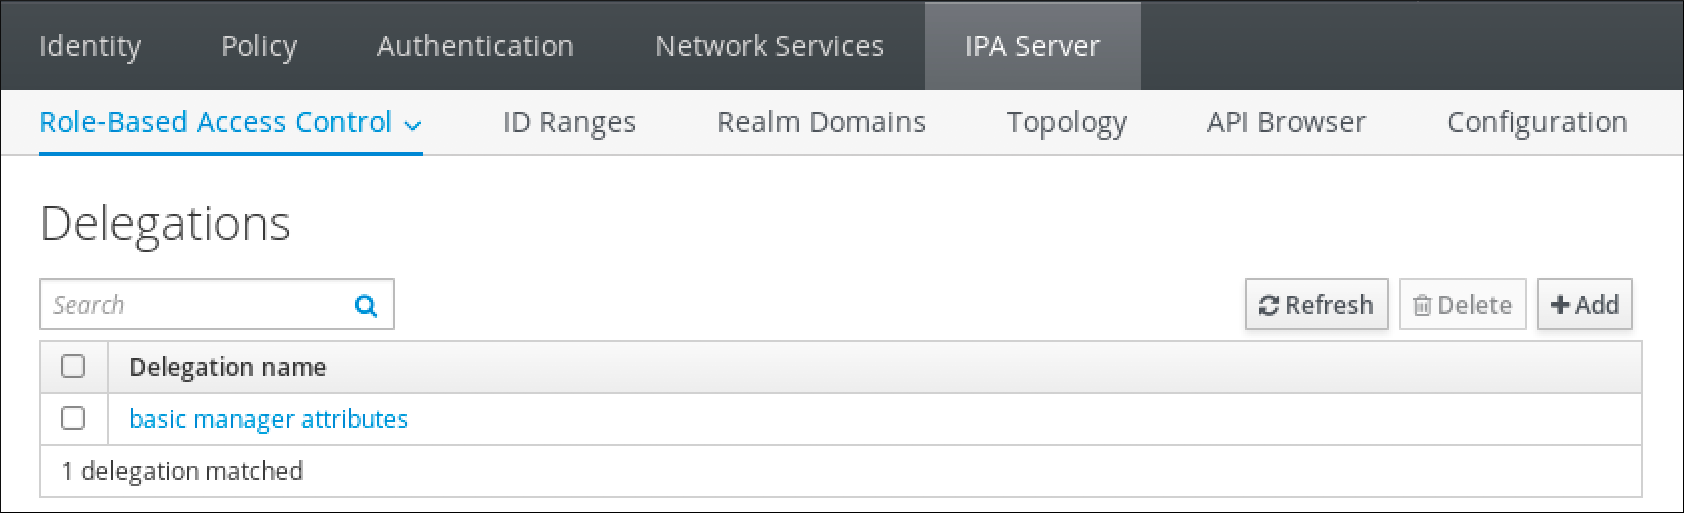 IdM Web UI のスクリーンショット。IPA Server タブのロールベースのアクセス制御サブメニューの Delegations ページが表示されています。また、テーブルには、委譲名で整理された委譲の項目が表示されています。